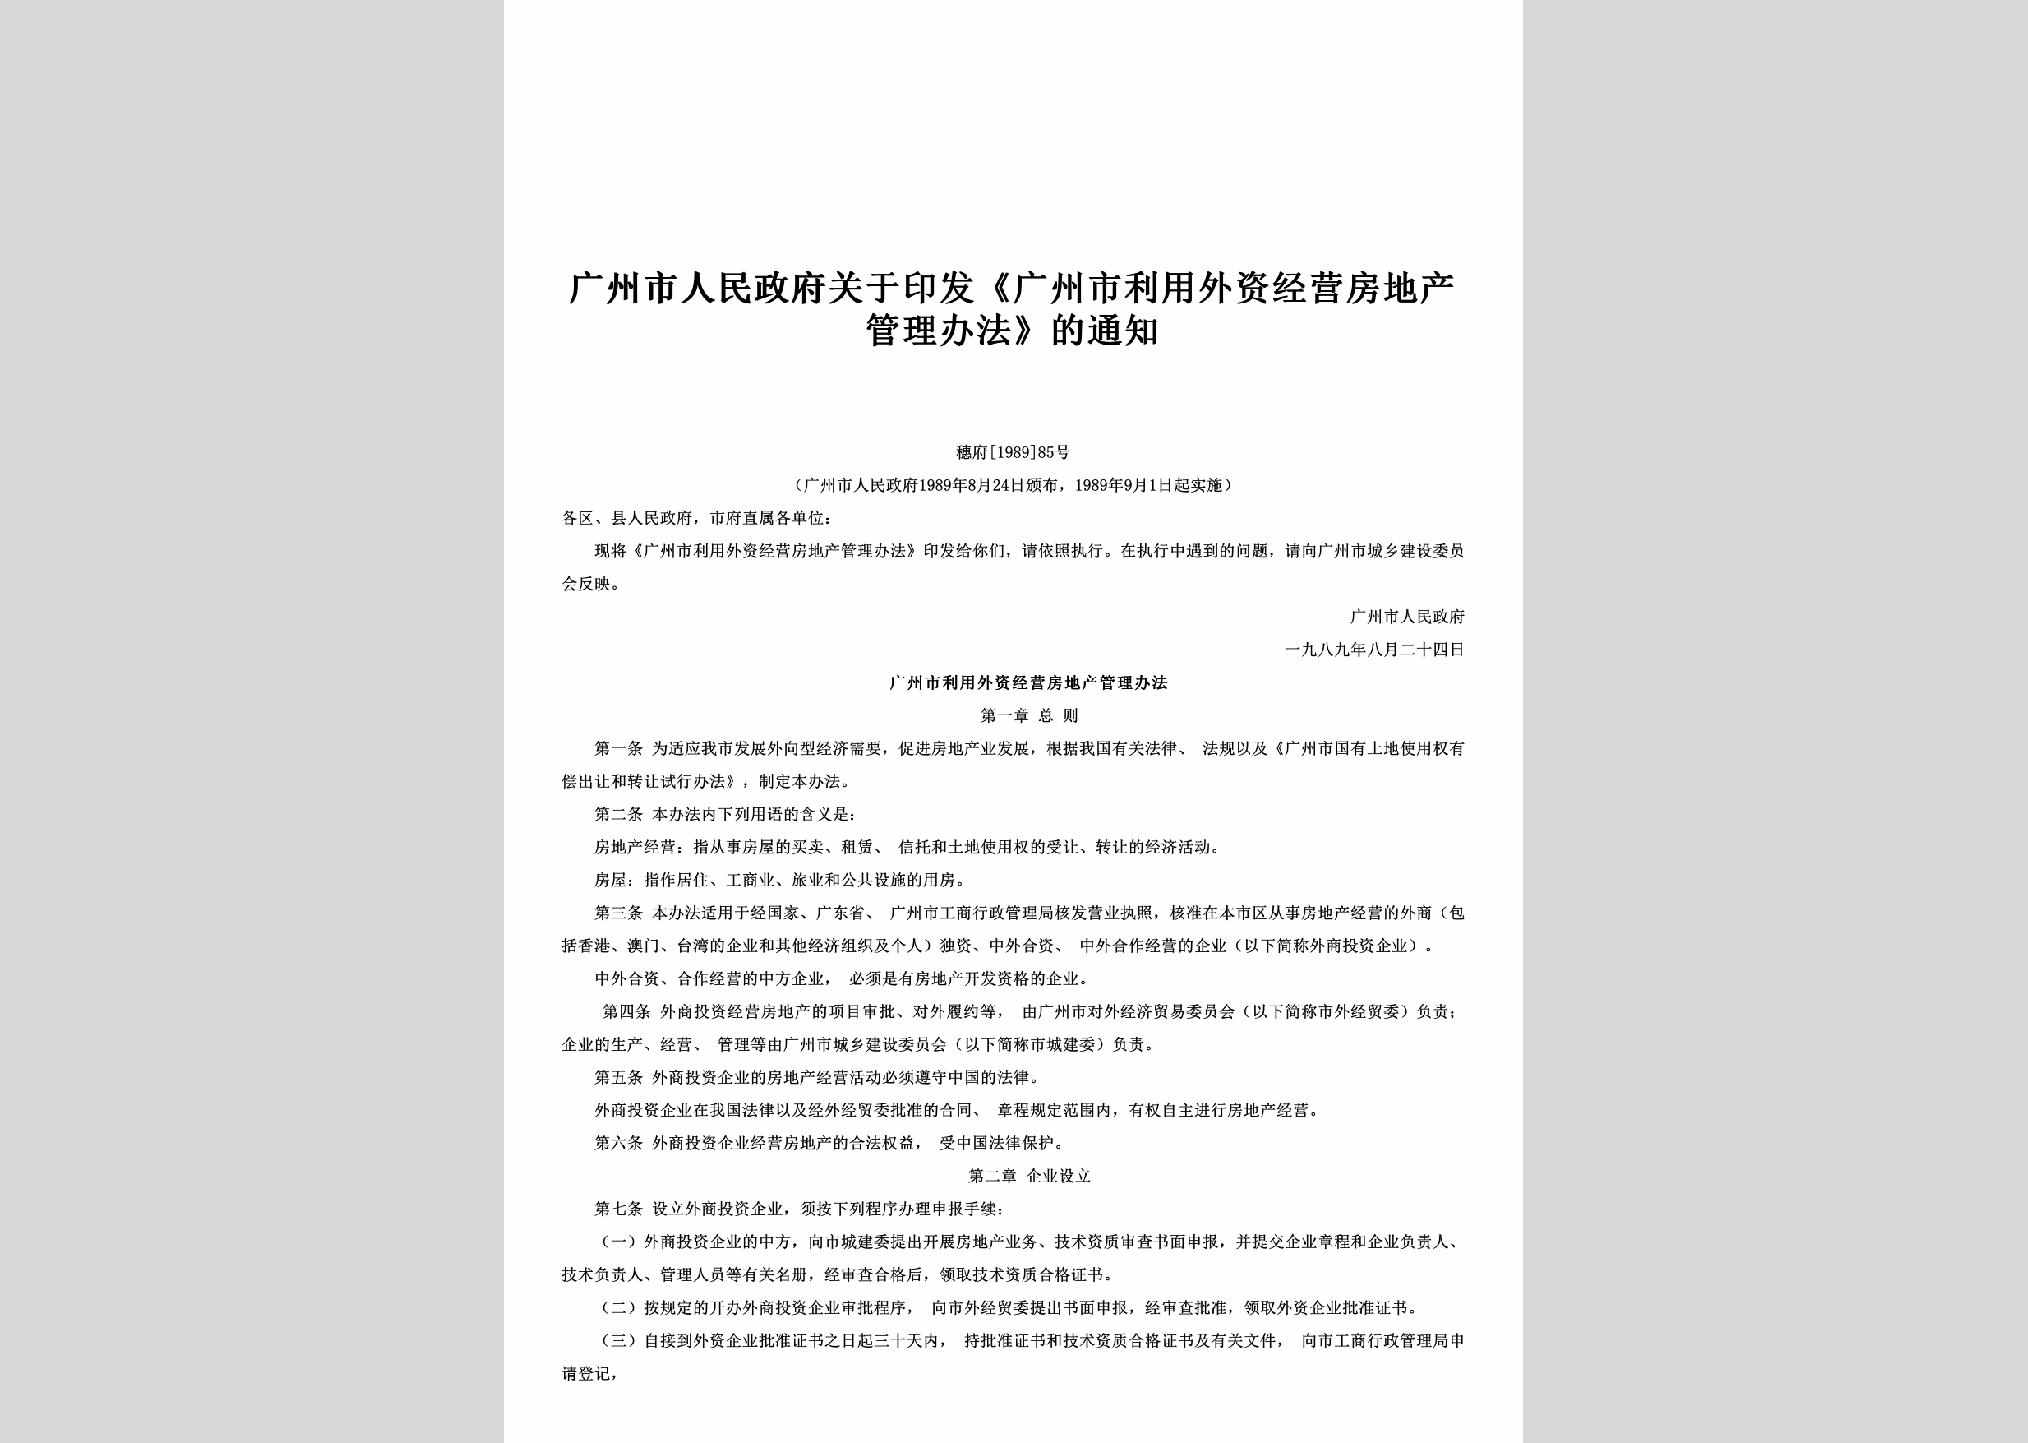 穗府[1989]85号：关于印发《广州市利用外资经营房地产管理办法》的通知